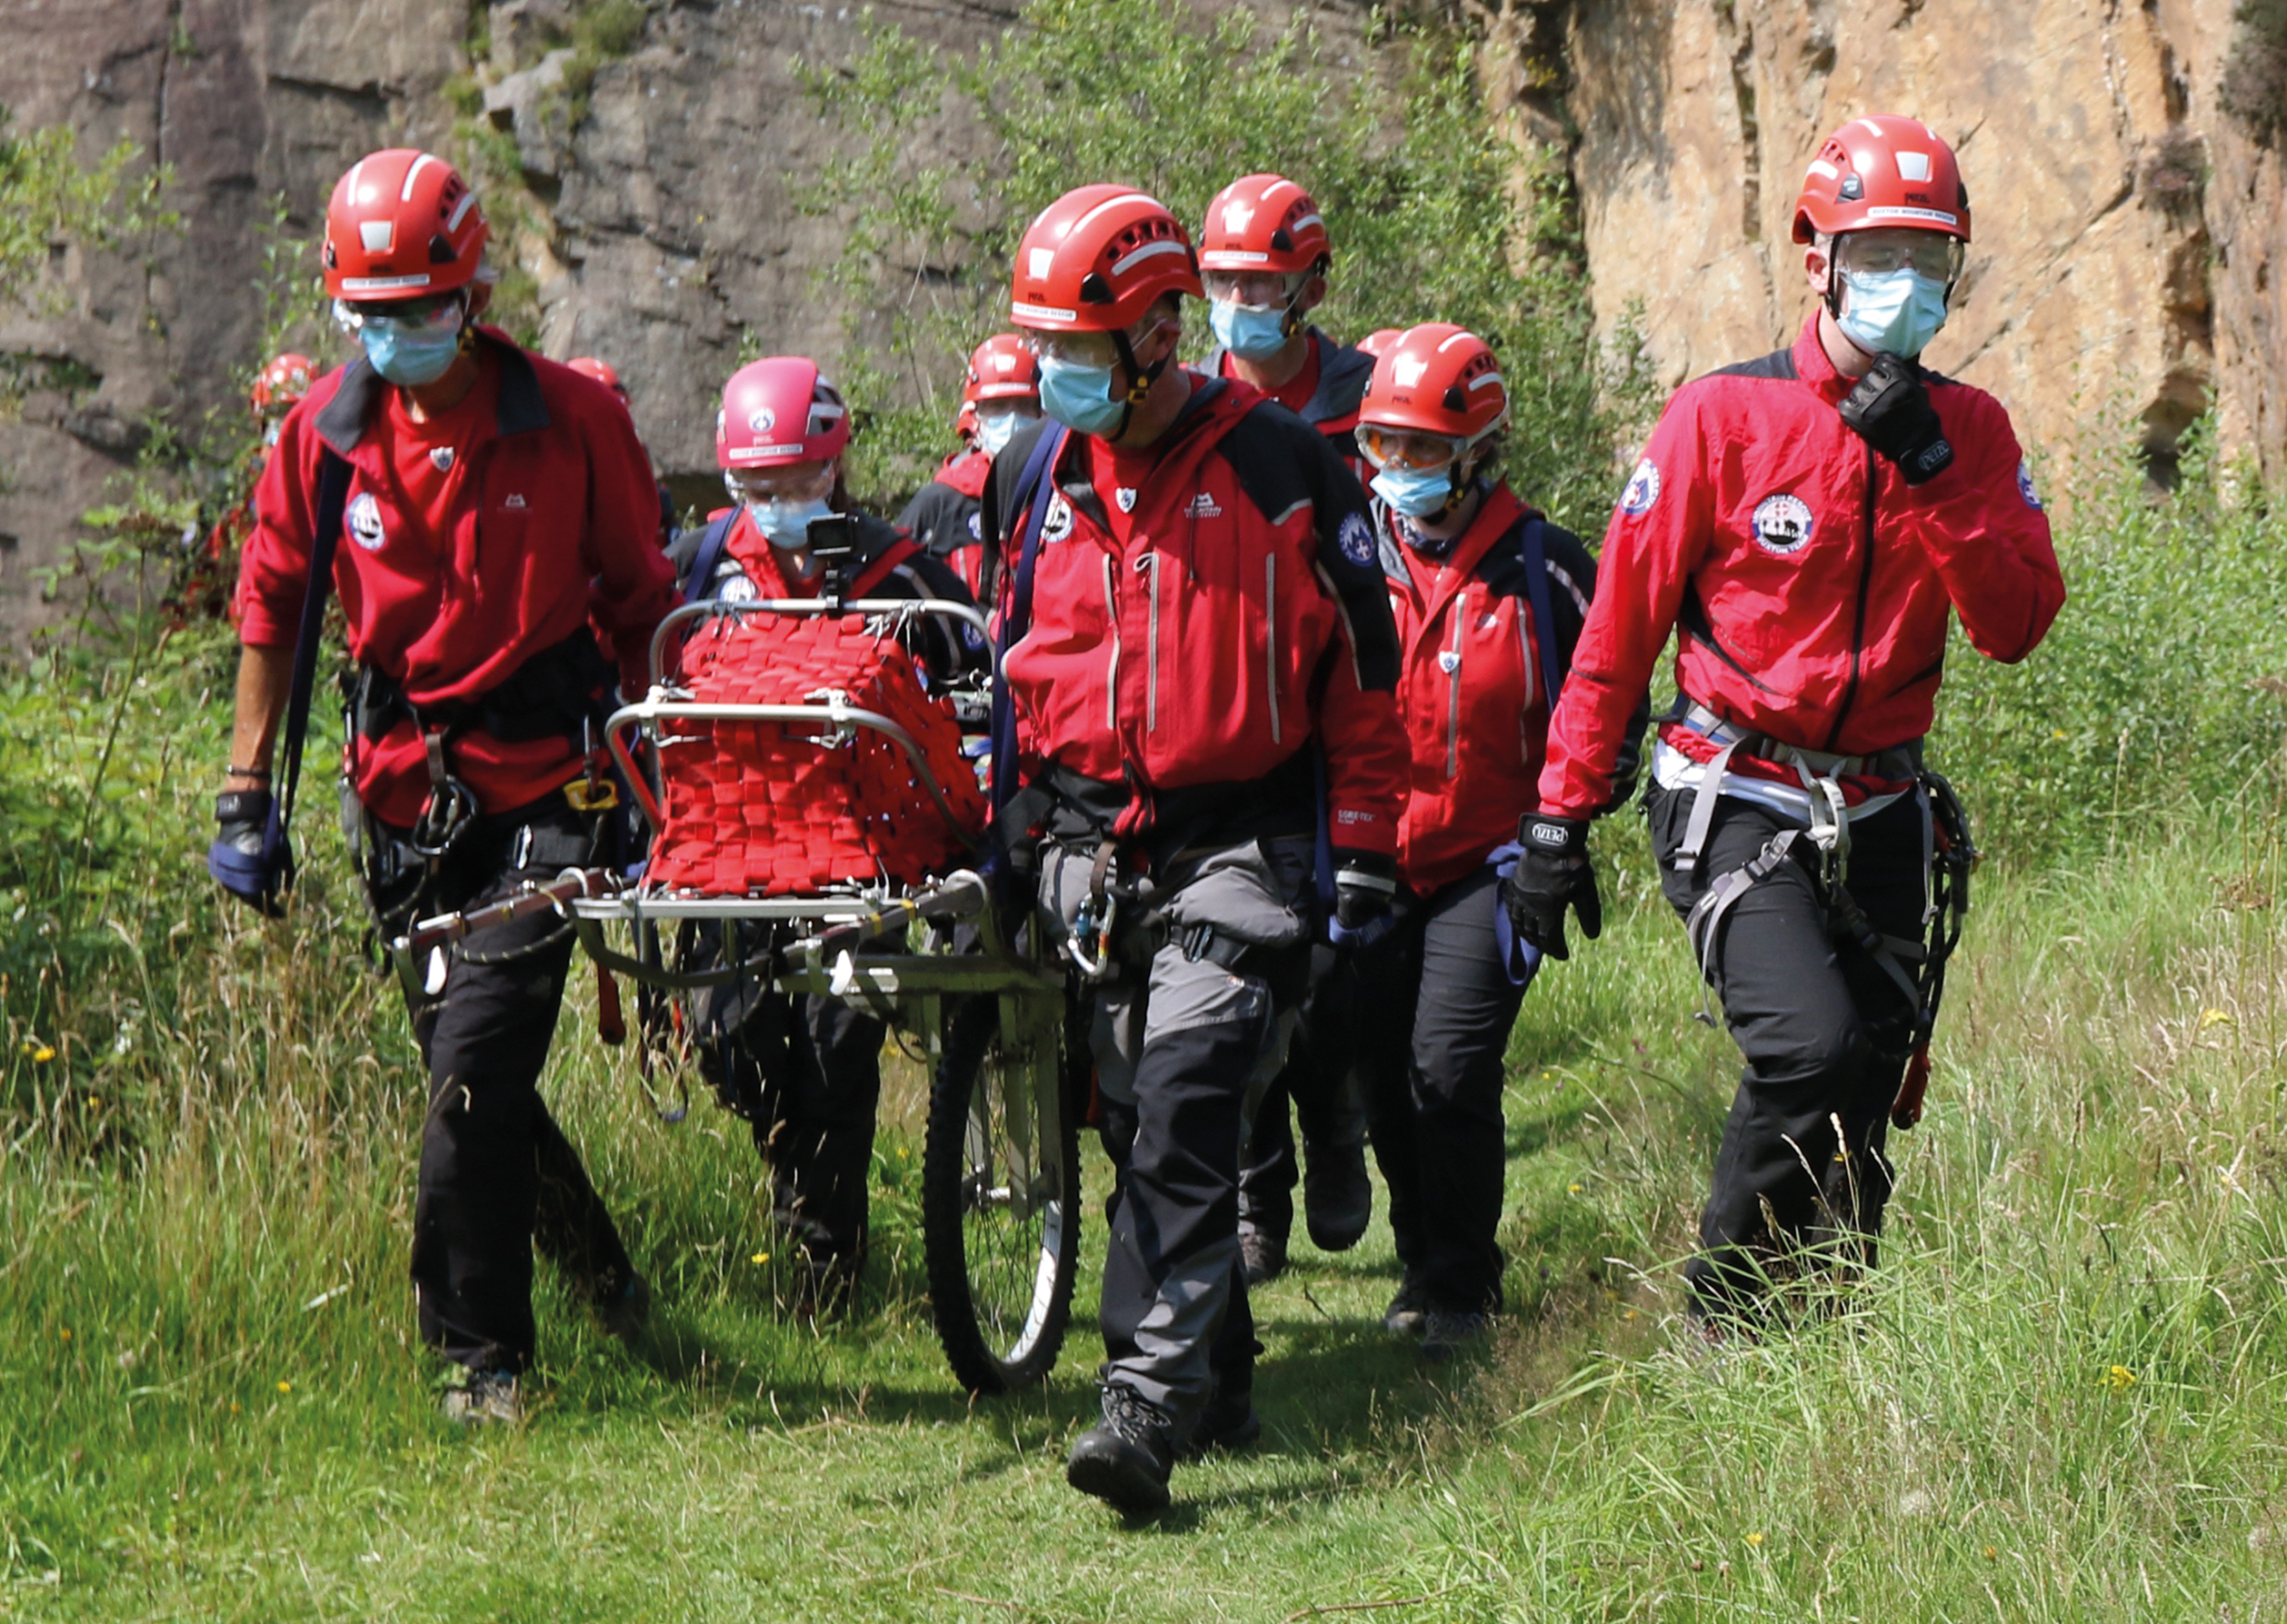 mountain rescue team